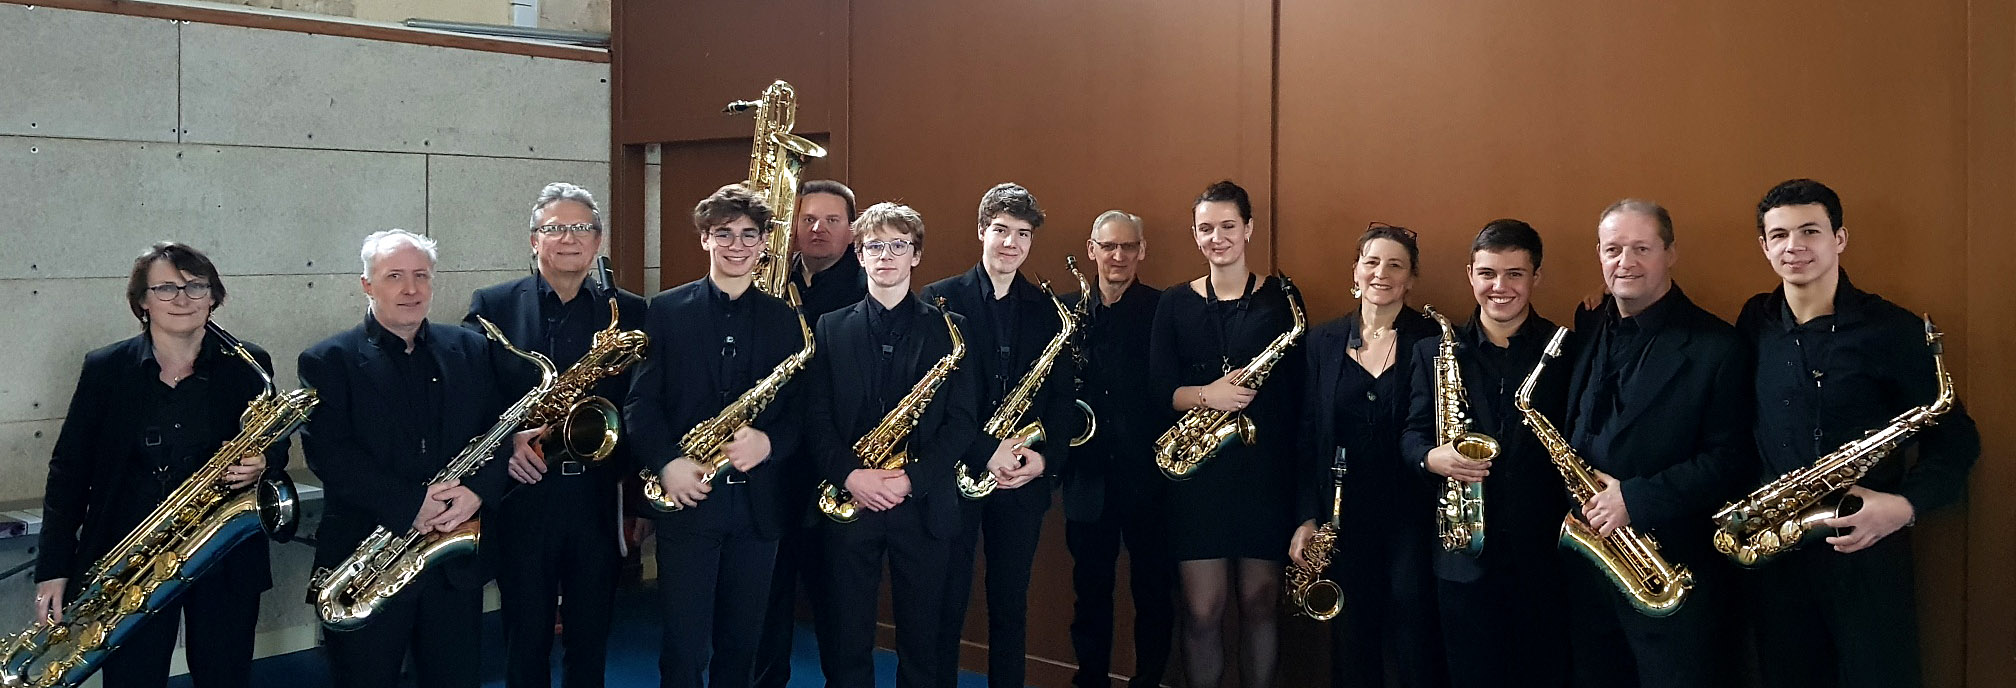 Ville de Senlis - Pupitre de Saxophones de l'Harmonie - Concert du Nouvel An 2020